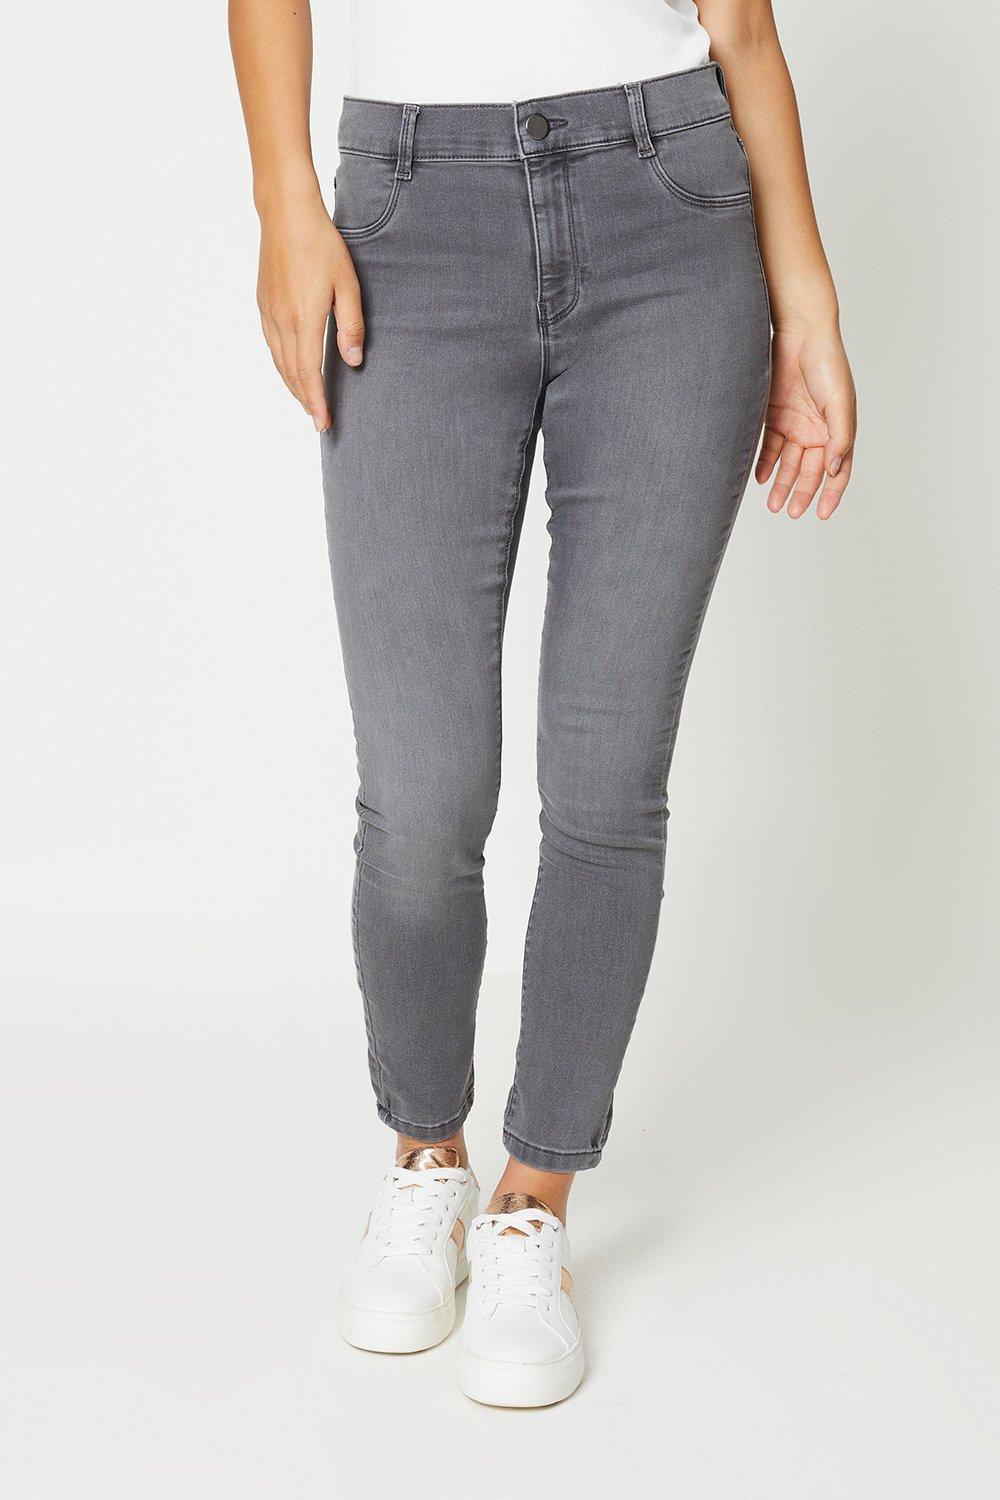 Women’s Petite Frankie Skinny Jeans - grey - 6